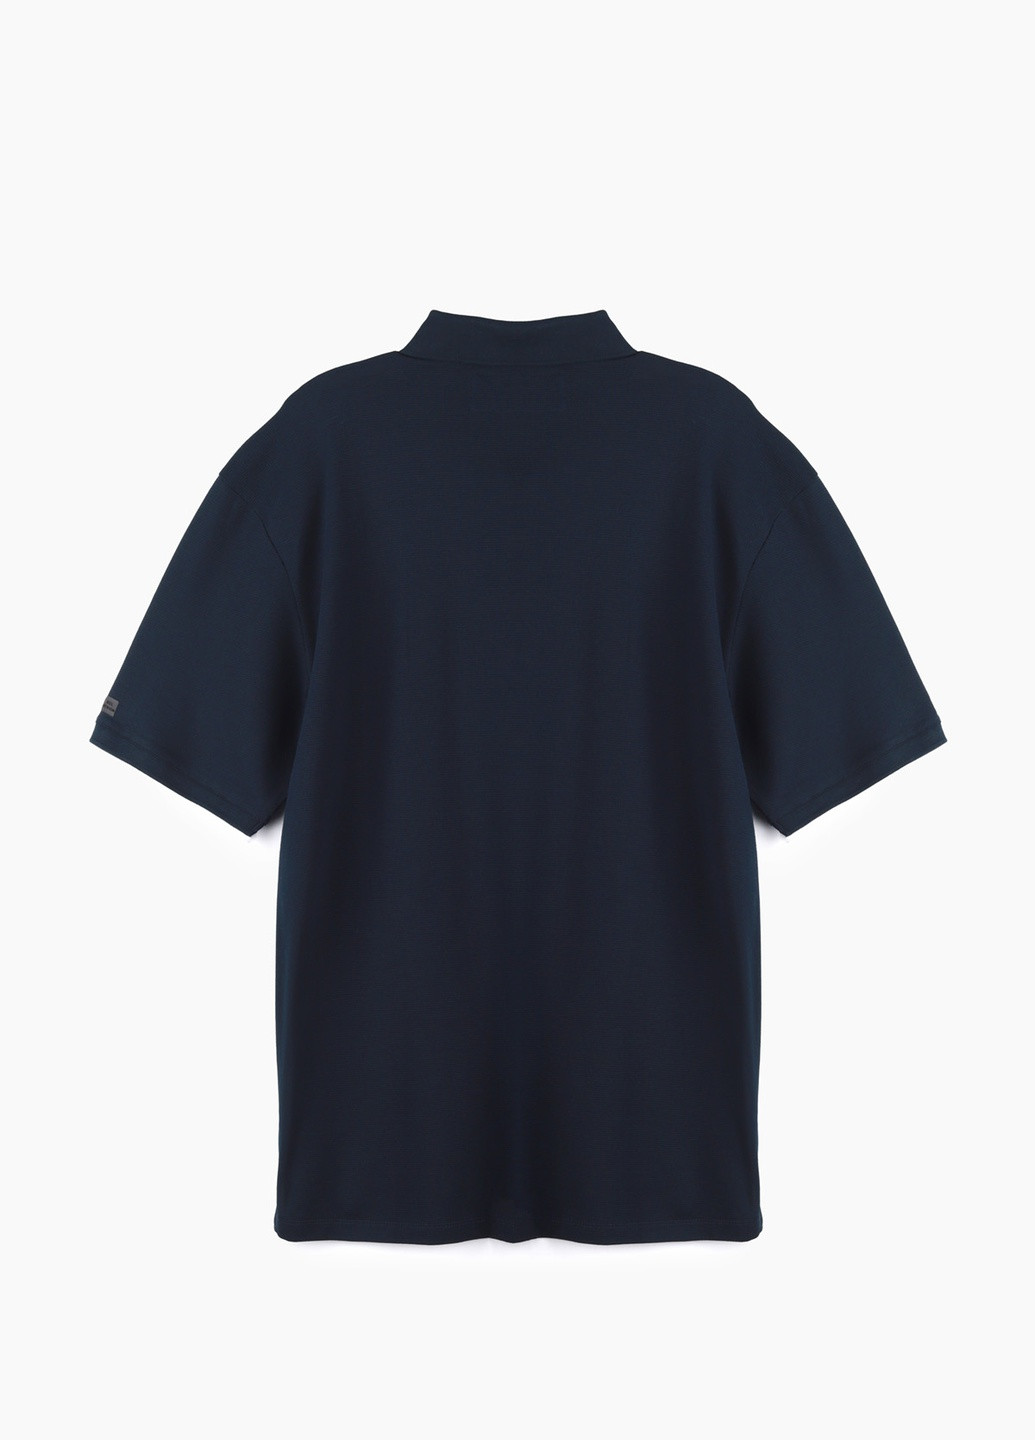 Темно-синяя футболка-поло для мужчин MCL однотонная